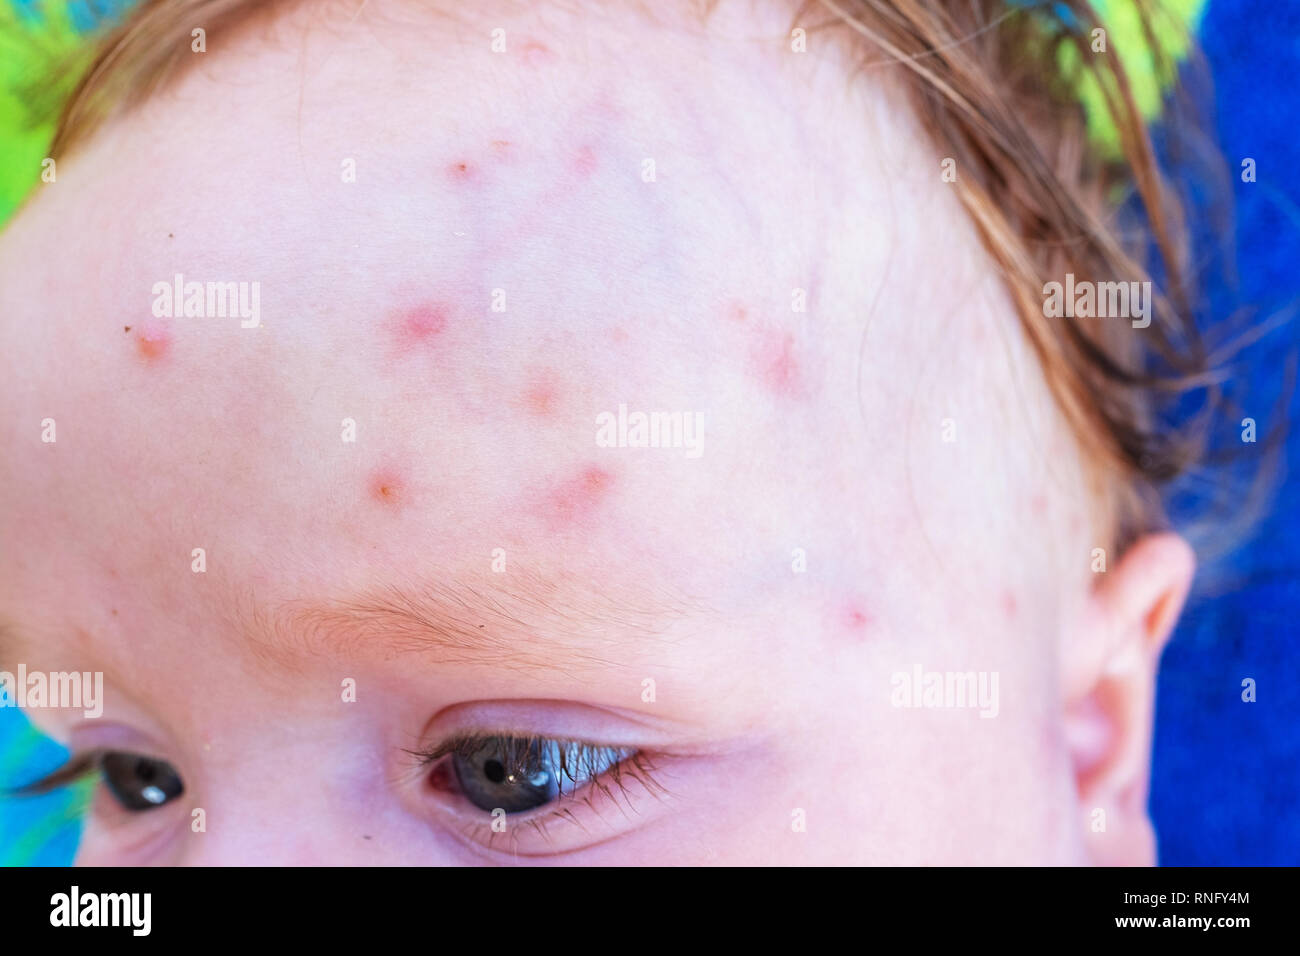 Les Piqures De Moustiques Sur Le Front D Un Petit Bebe En Ete Photo Stock Alamy